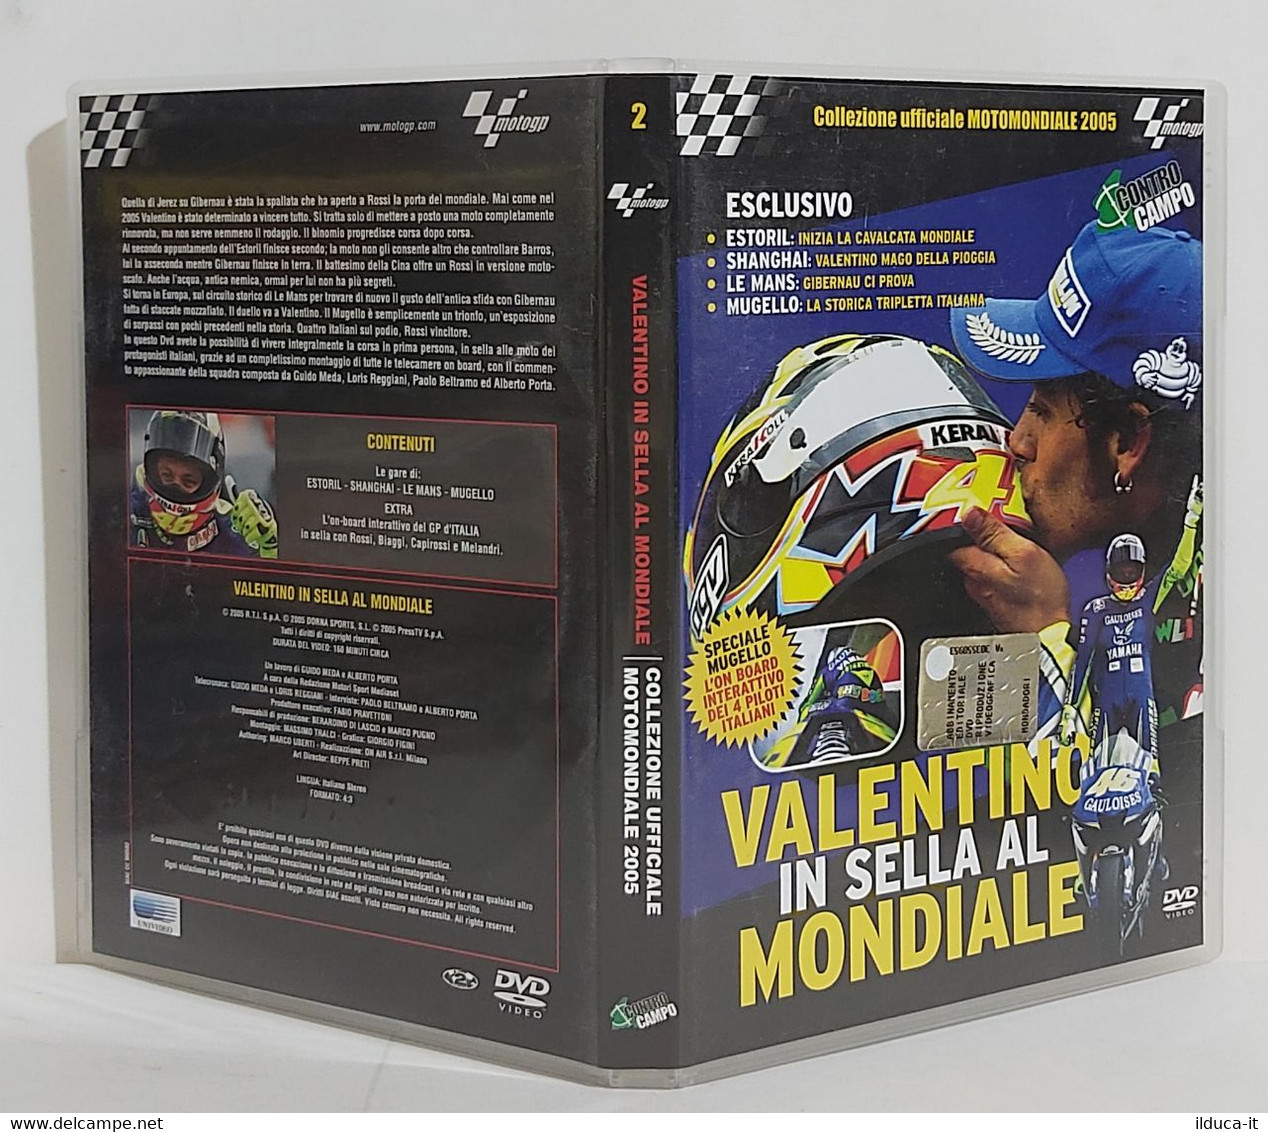 I101822 DVD - Collezione Ufficiale Motomondiale 2005 N. 2 - Valentino - Sports